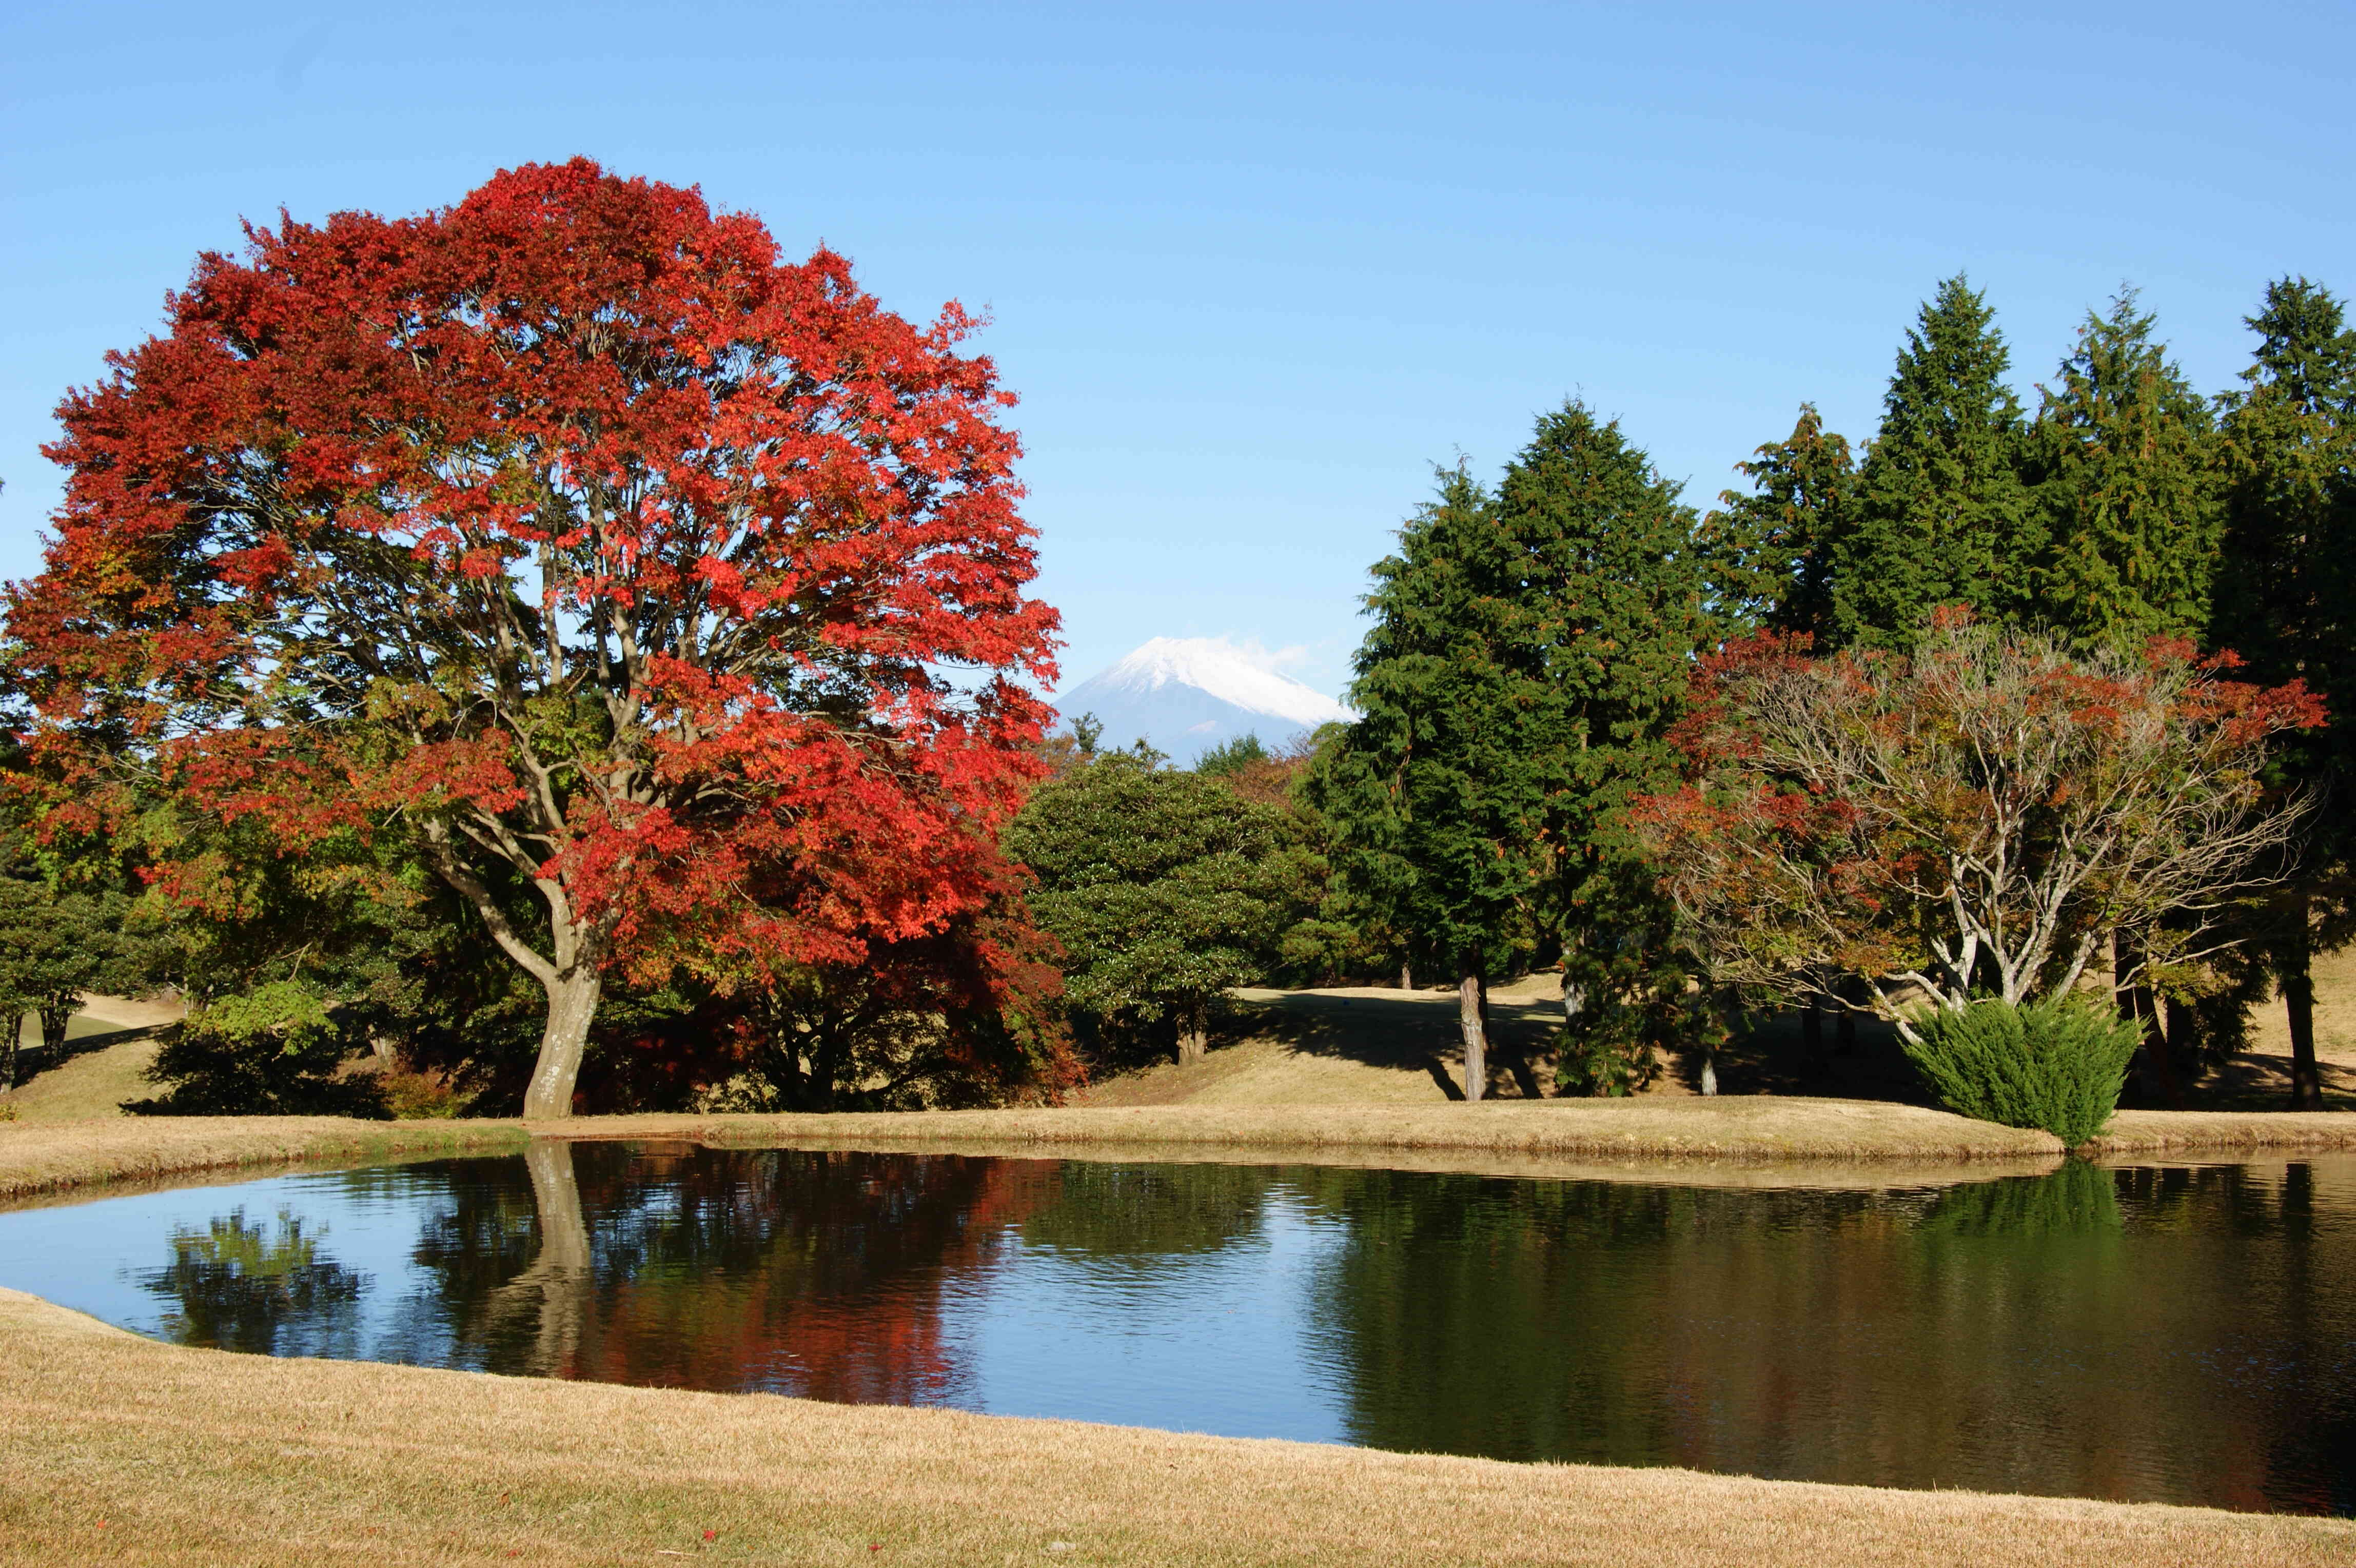 池越しに見える雪化粧の富士山と紅葉のコントラストが素敵です。